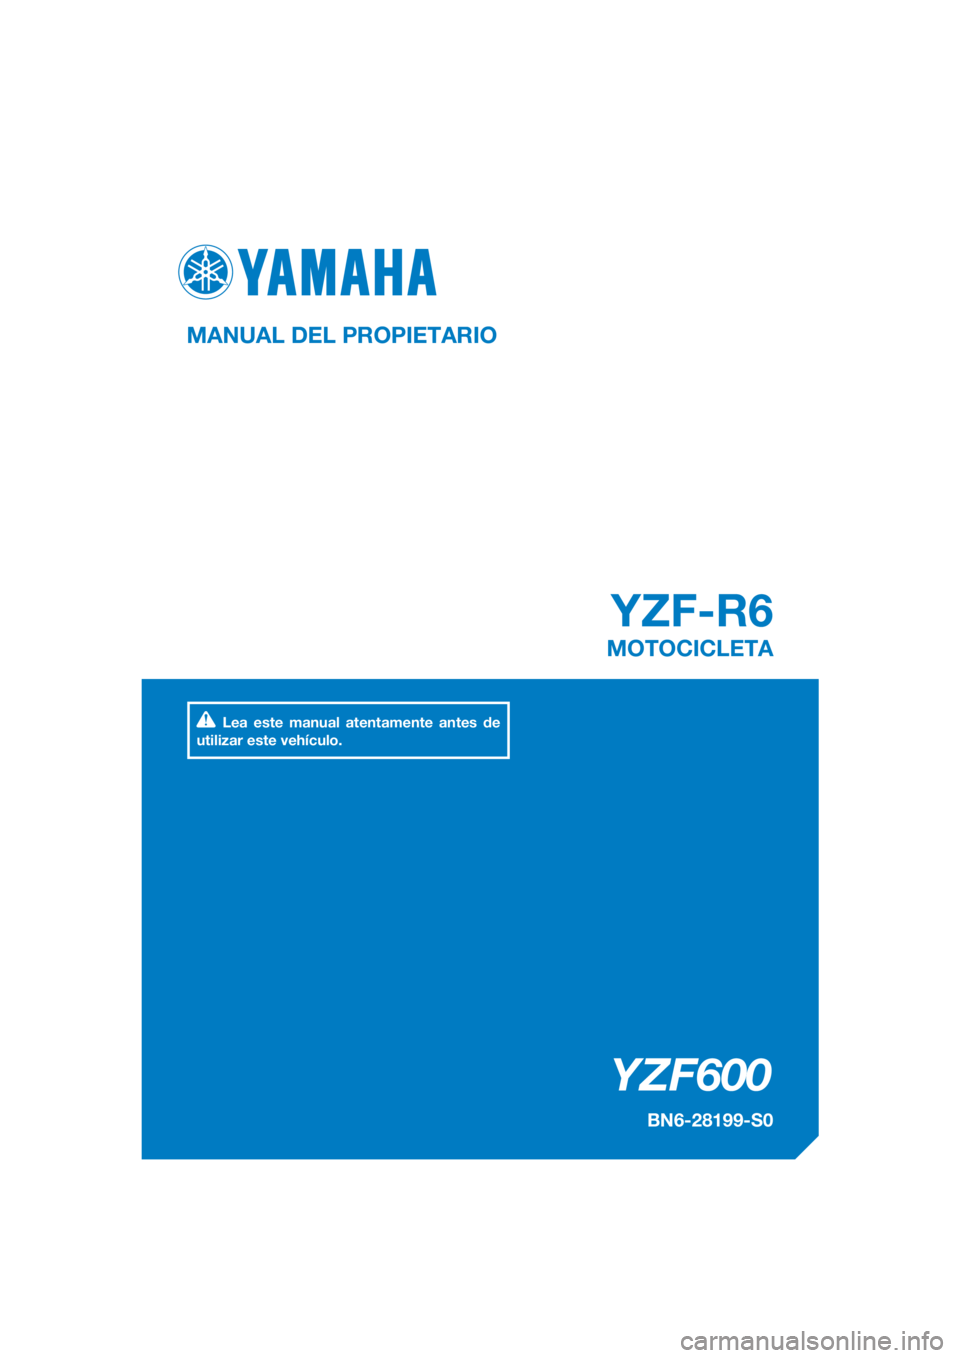 YAMAHA YZF-R6 2017  Manuale de Empleo (in Spanish) DIC183
YZF600
YZF-R6
MANUAL DEL PROPIETARIO
BN6-28199-S0
MOTOCICLETA
Lea este manual atentamente antes de 
utilizar este vehículo.
[Spanish  (S)] 